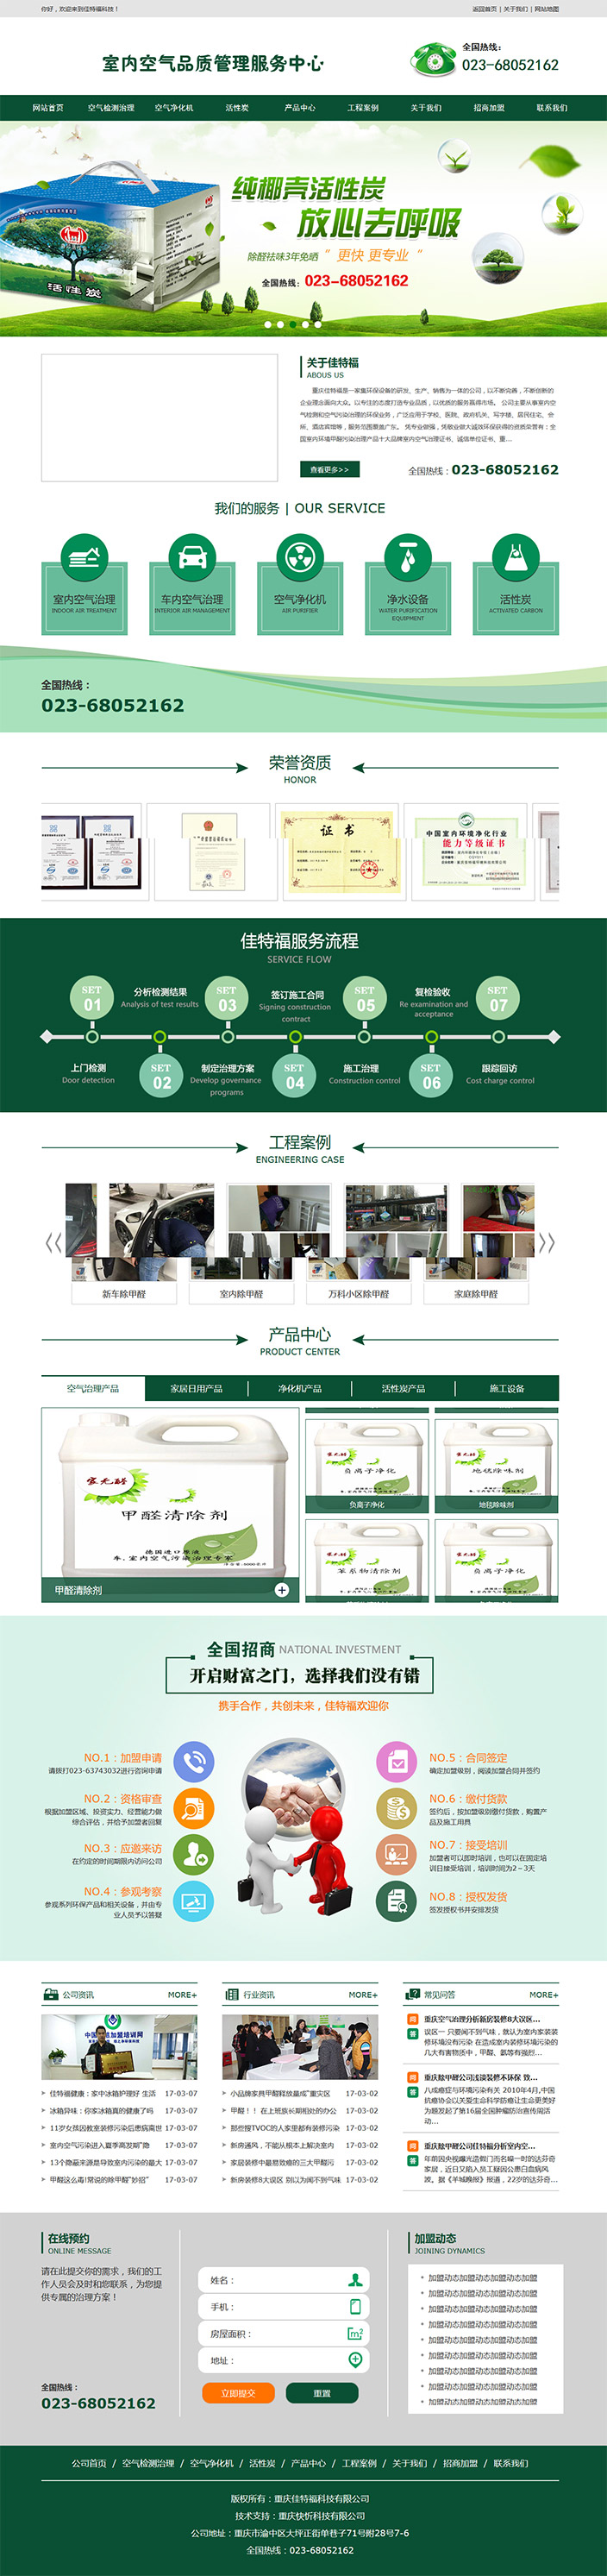 重庆佳特福科技有限公司网站建设案例